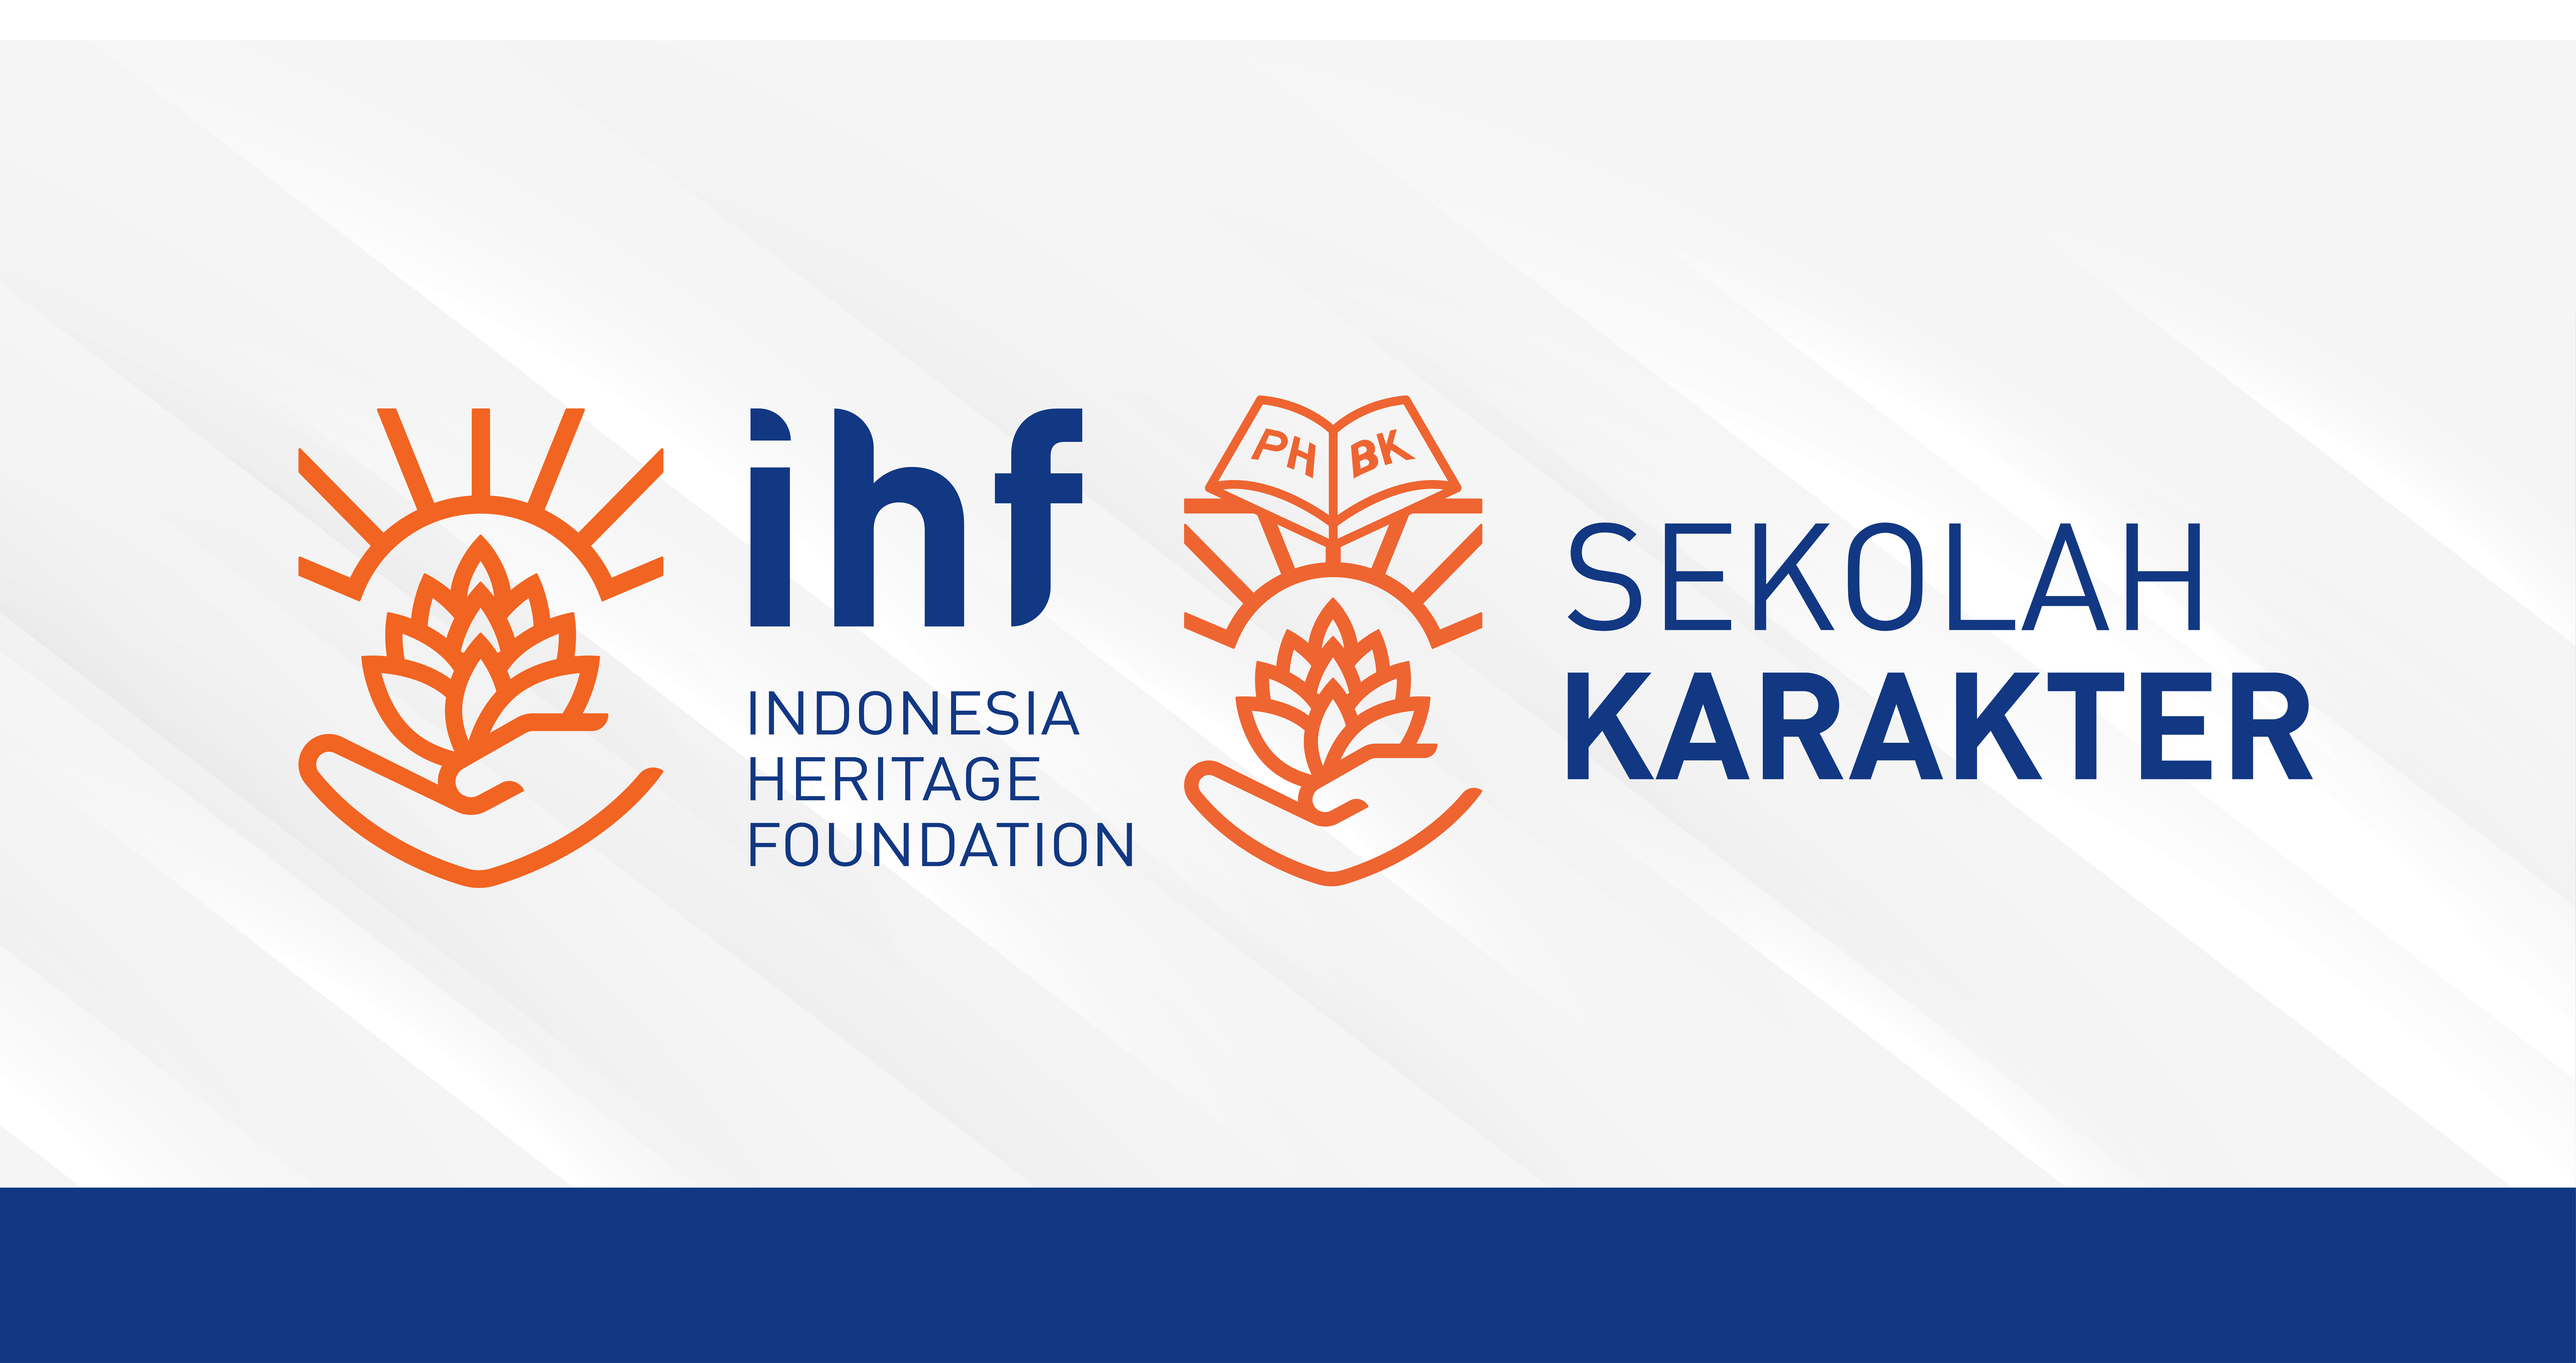 Semangat Baru IHF dan Sekolah Karakter untuk Membentuk Generasi Muda Indonesia yang Berkarakter,  Cerdas, dan Berdaya Pikir Tinggi